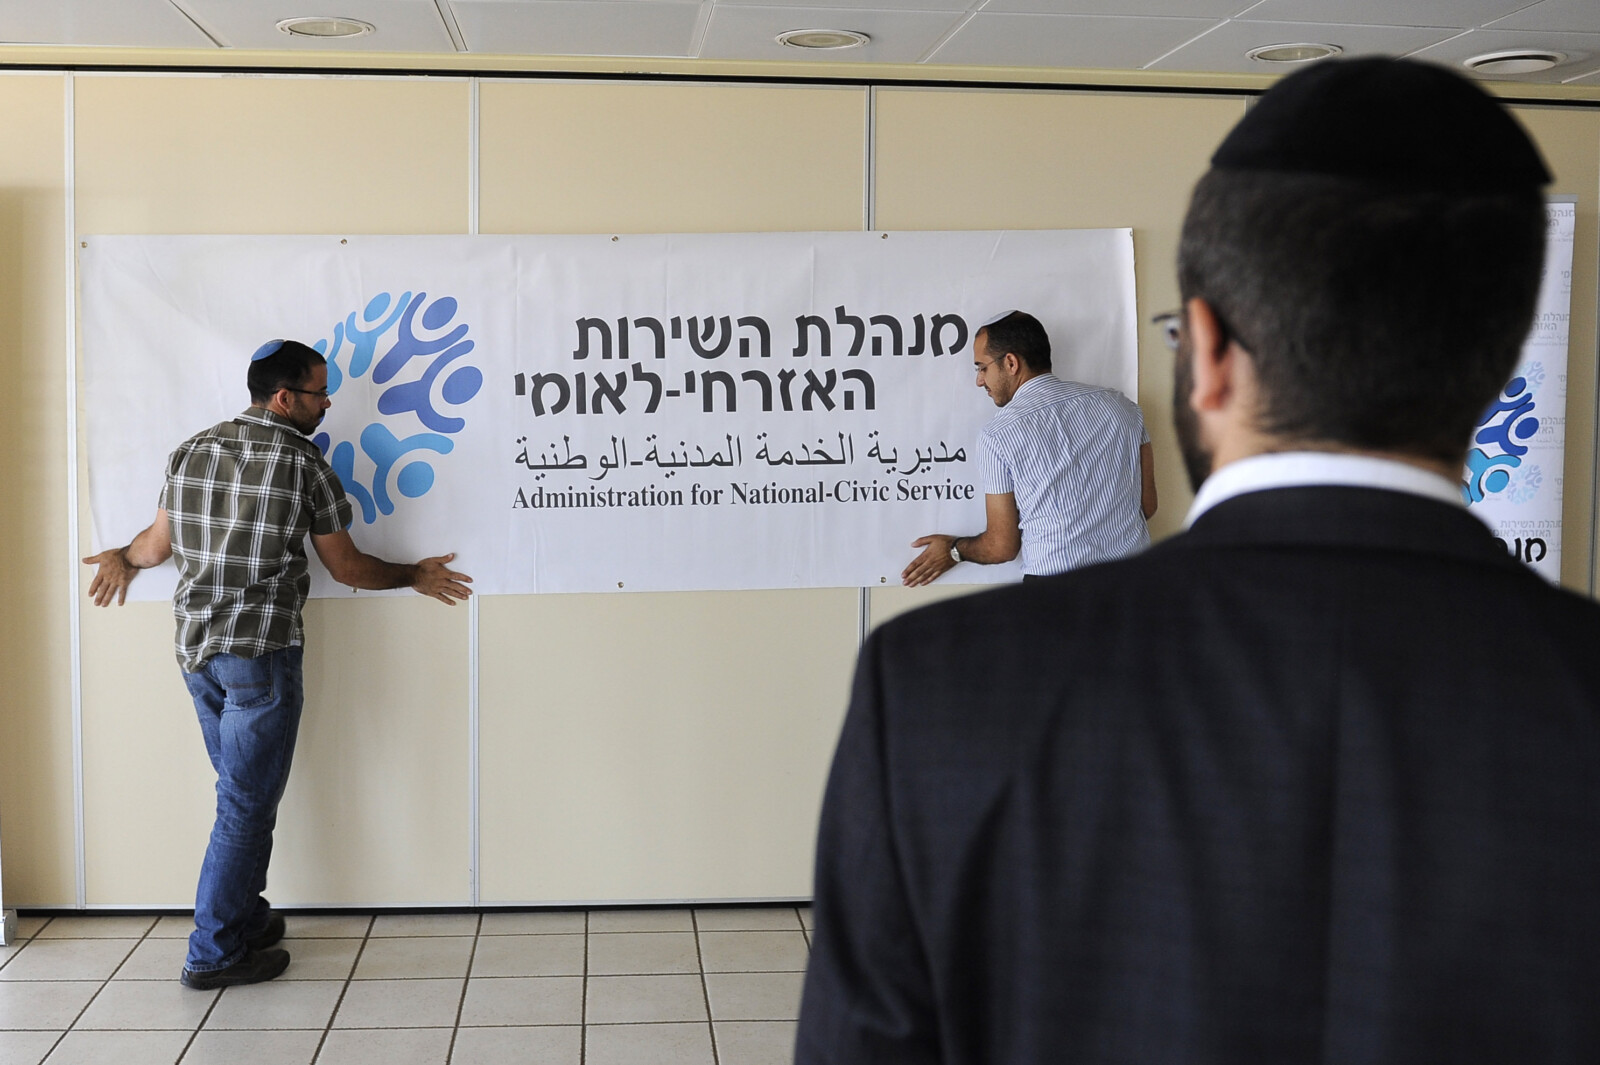 אדם חרדי בכניסה לכנס של השירות הלאומי אזרחי. "מגיעים מכלל החברה הישראלית, מהפריפריה ומהמרכז בתמונת ראי להתפלגות של חברה הישראלית" (צילום: סוזנה ינקו/פלאש90)